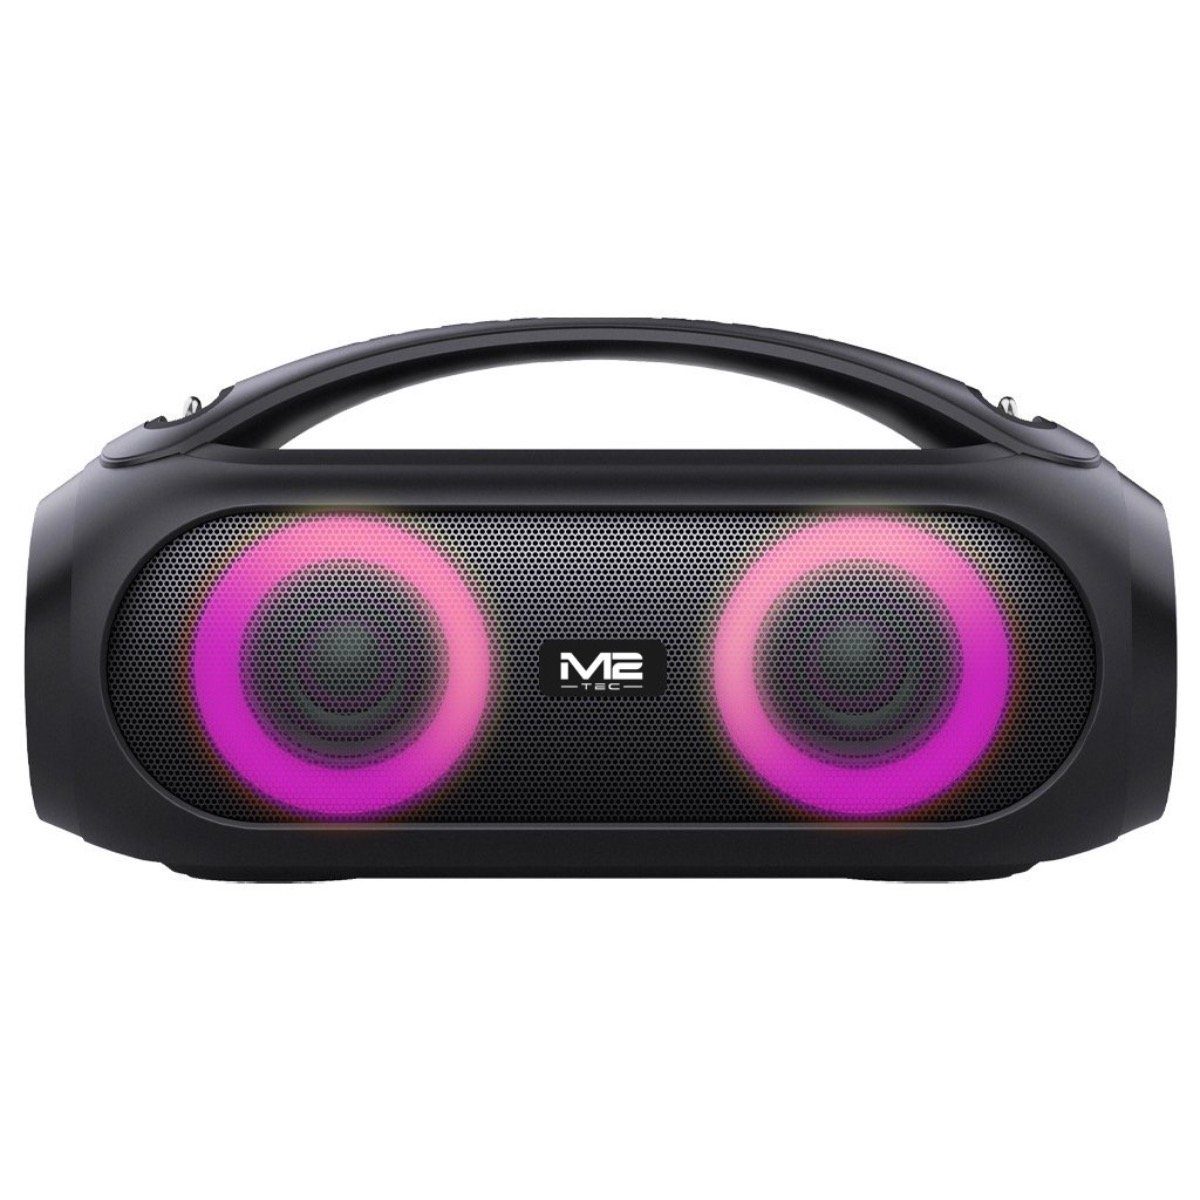 40 Bluetooth-Lautsprecher BoomBox tragbare Musikbox W) M2-Tec (Bluetooth,